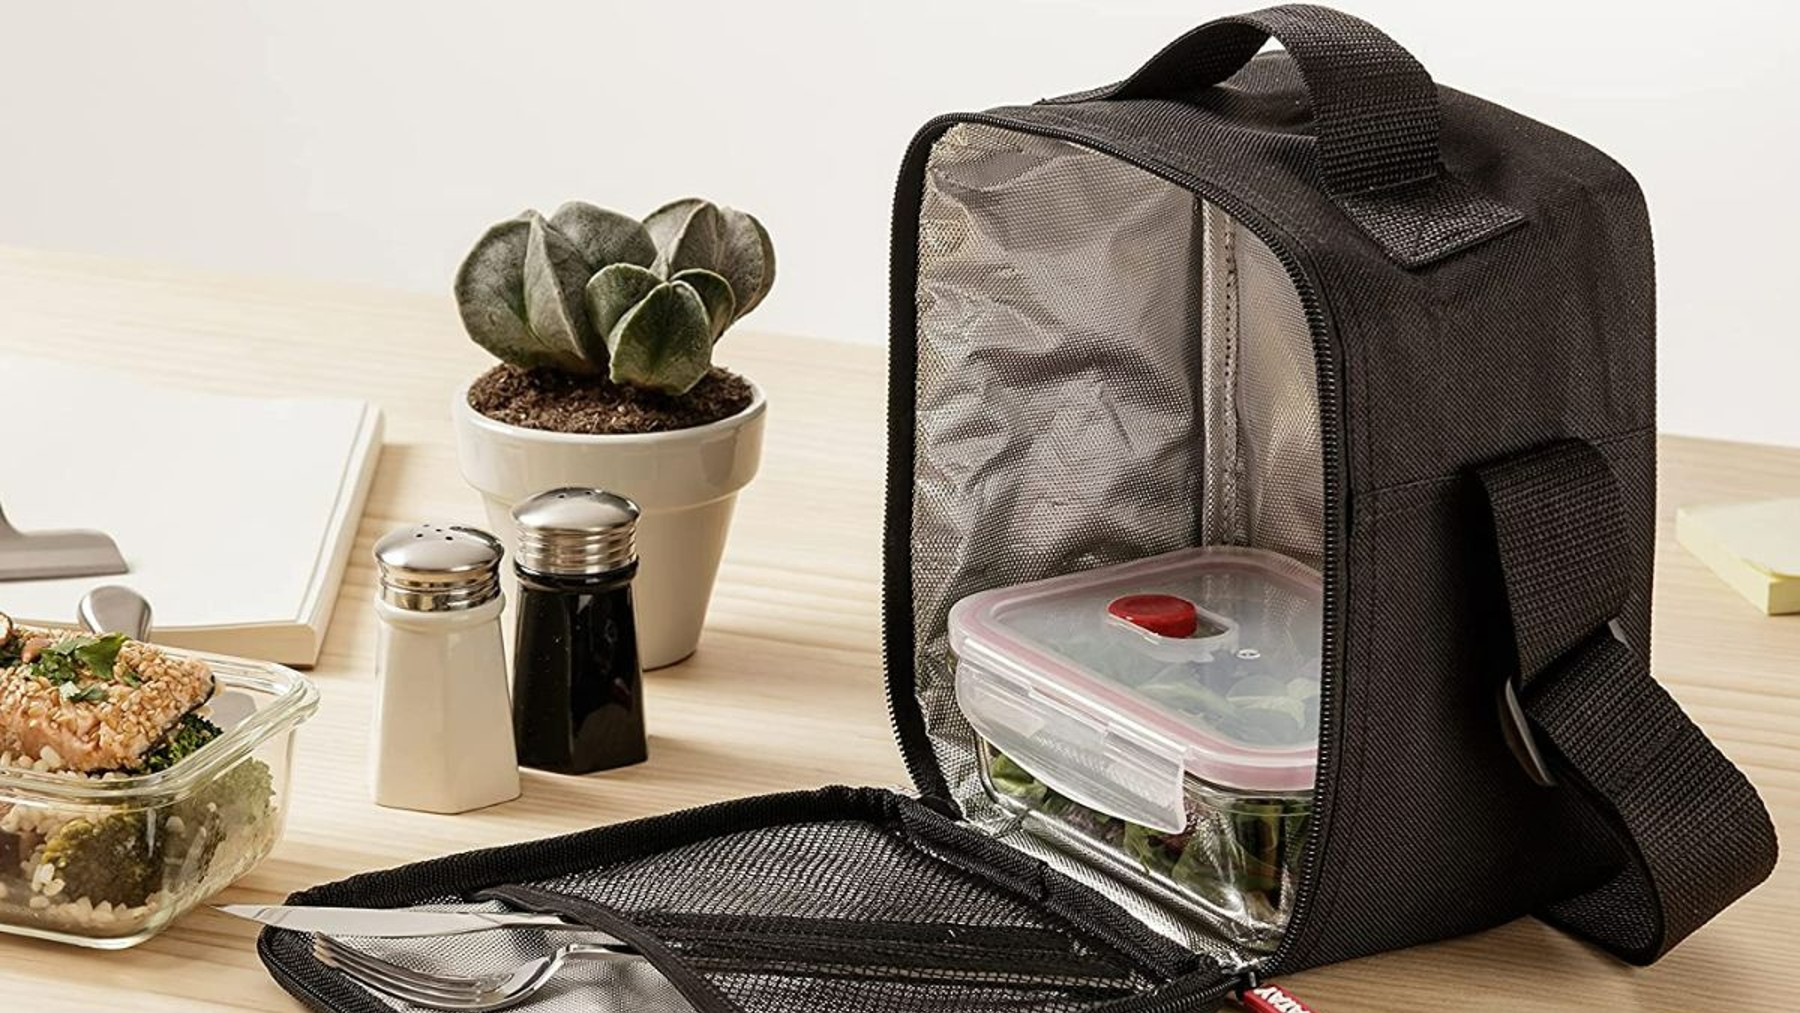 Las 5 mejores bolsas térmicas para llevar tu comida al trabajo